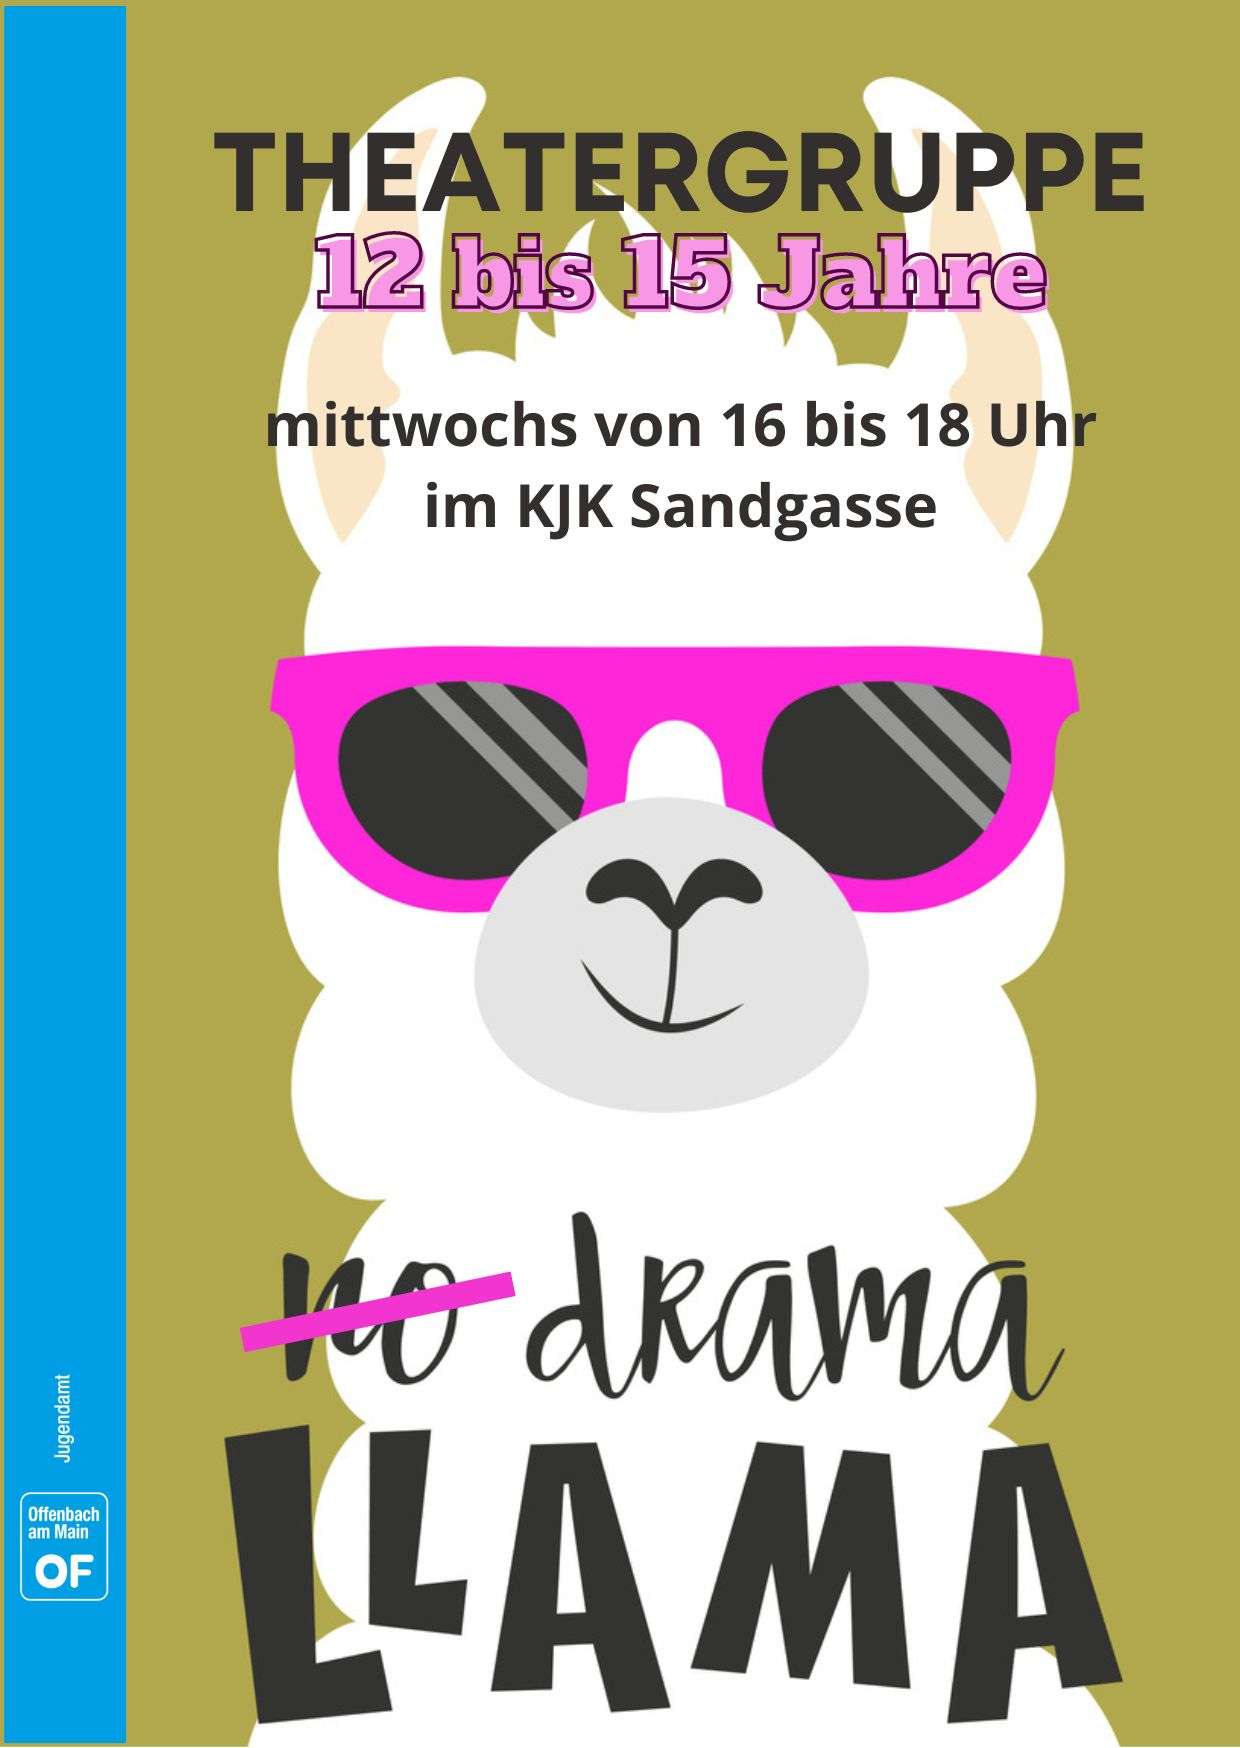 Ein Comiclama unter dem No drama Llama steht, da no ist durchgestrichen. Text: Theatergruppe 12-15 Jahre. KJK Sandgasse.